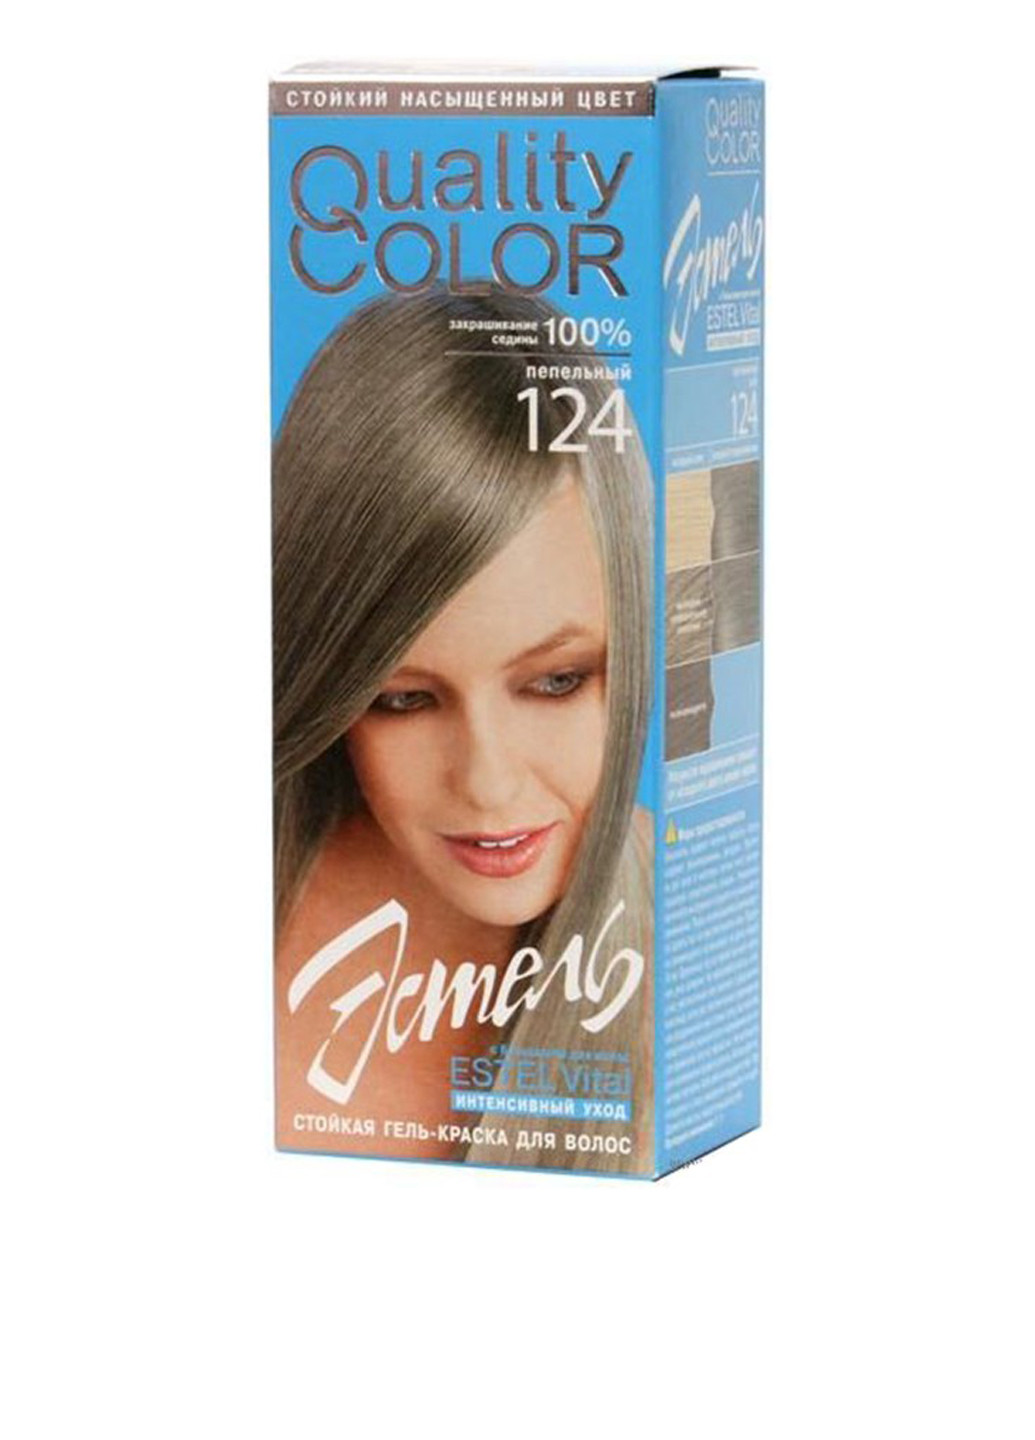 124, гель-краска для волос Vital Quality Color (пепельный) Estel (75100133)